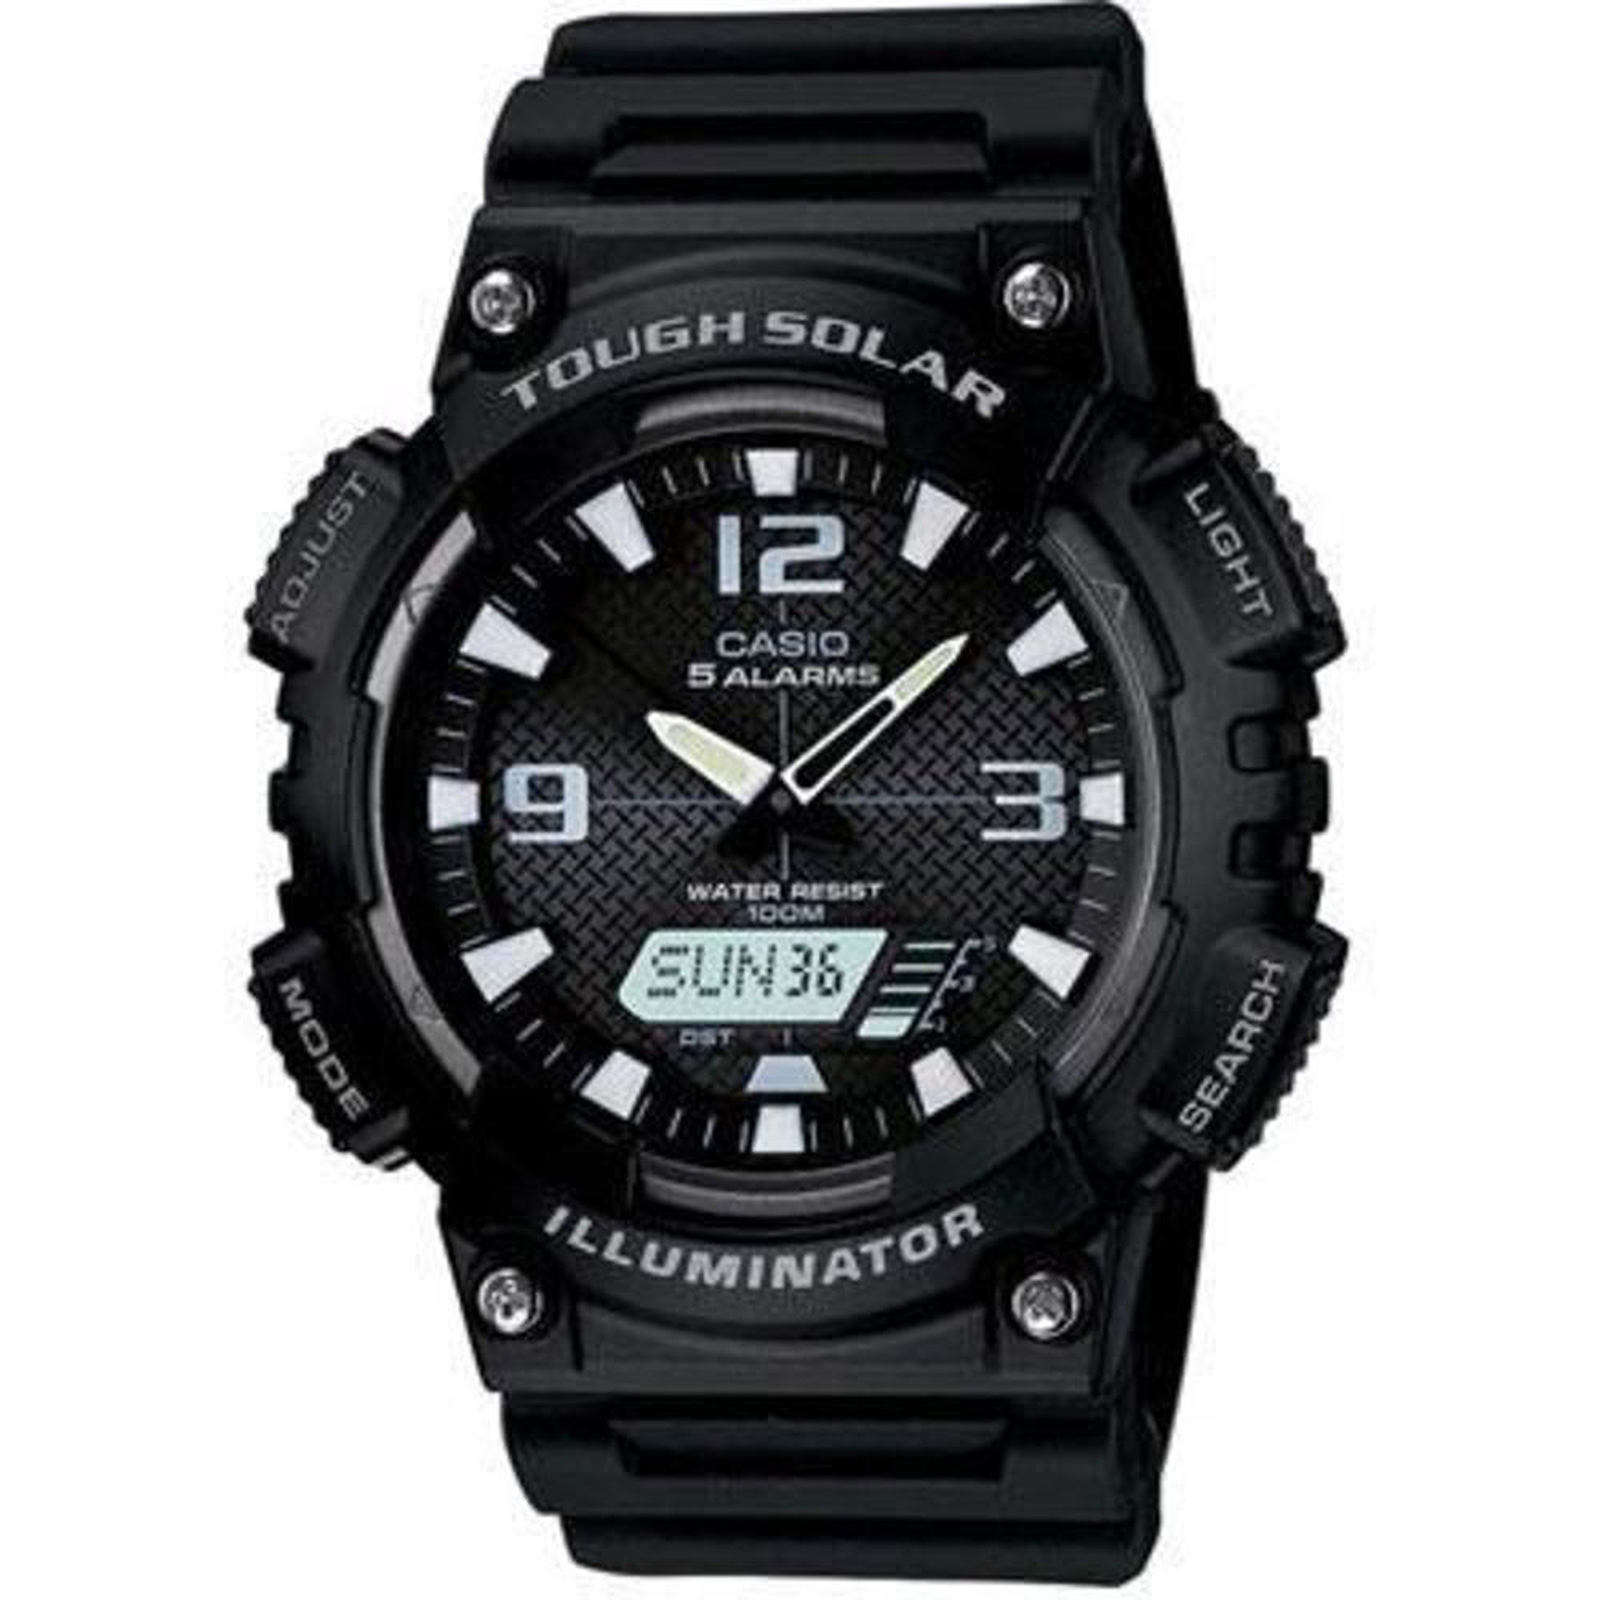 Casio AQS810W-1AV Men’s Illuminator Resin Watch - Black